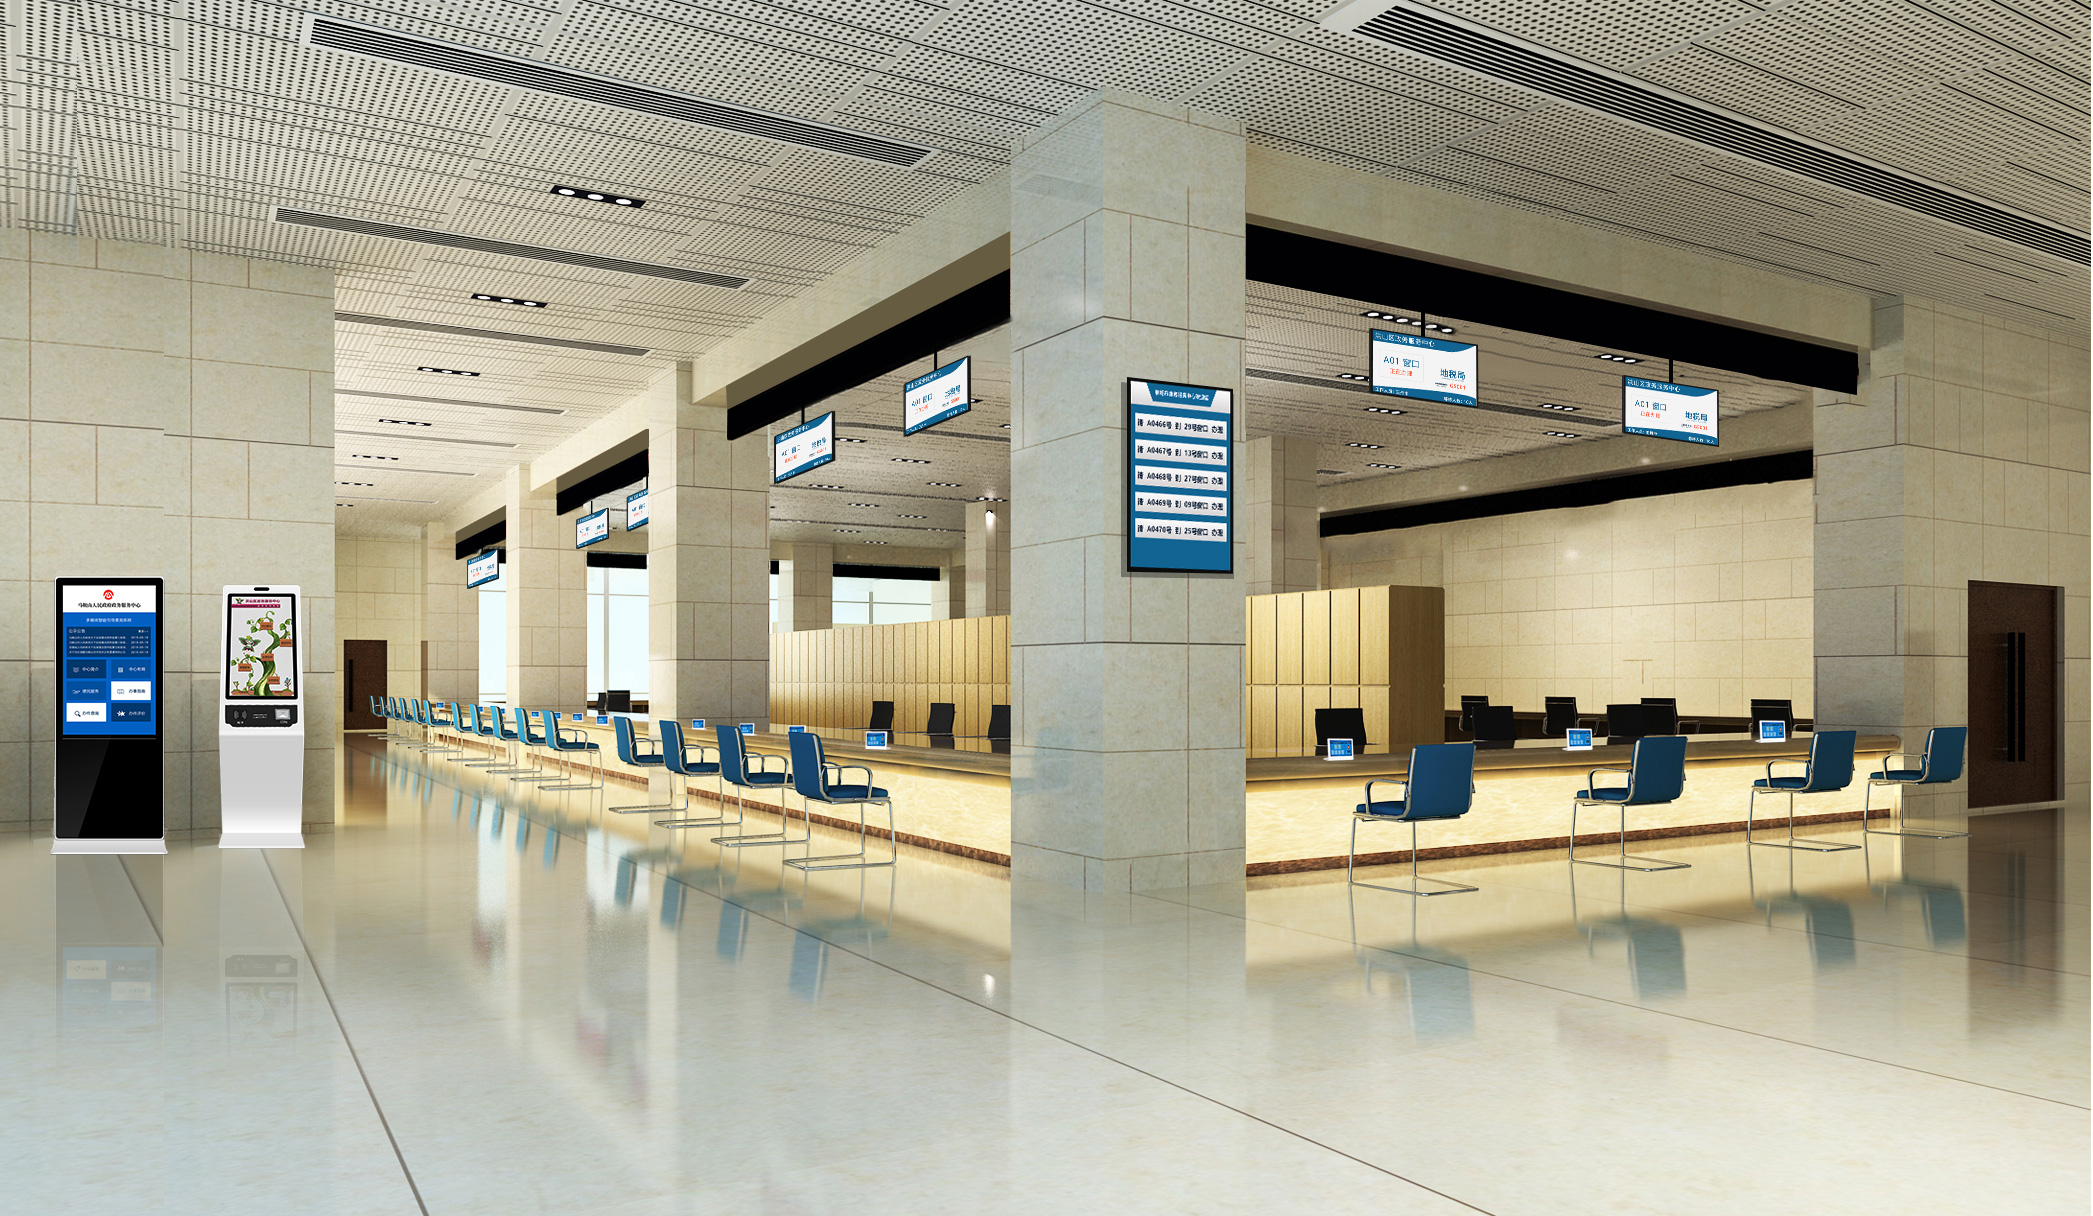 星际互动智慧政务大厅中枢管理平台 提高政务中心的综合管理水平